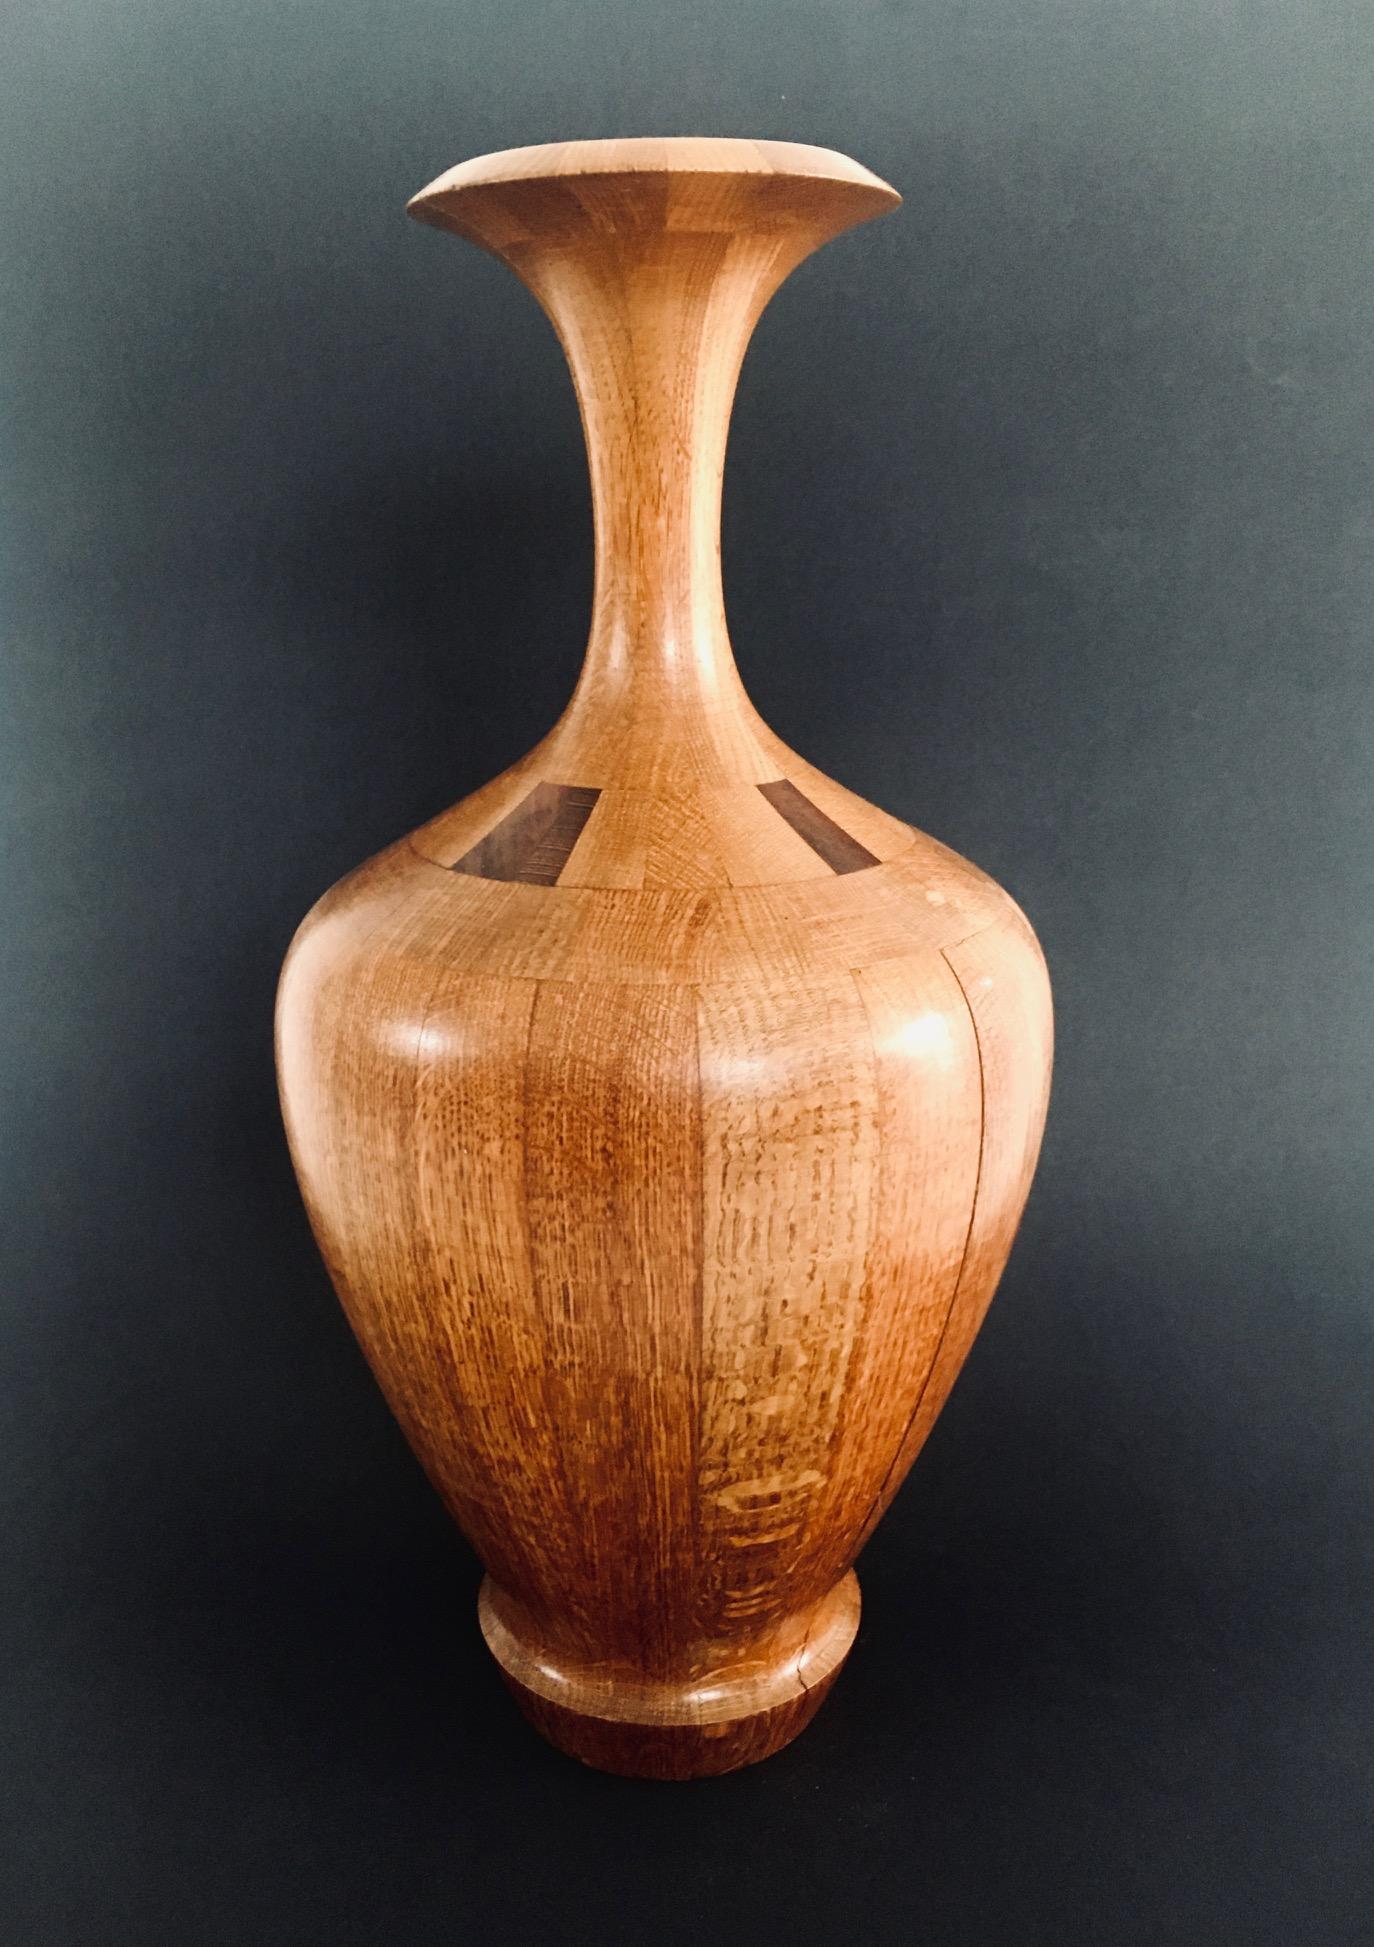 Vintage RARE Vase d'Art of Vintage en bois dur par Maurice Bonami pour De Coene frères. Fabriqué en Belgique dans les années 1950. Vase en forme de trompette cannelée, construit et tourné en bois dur. Le numéro de référence PC 8755 est apposé au